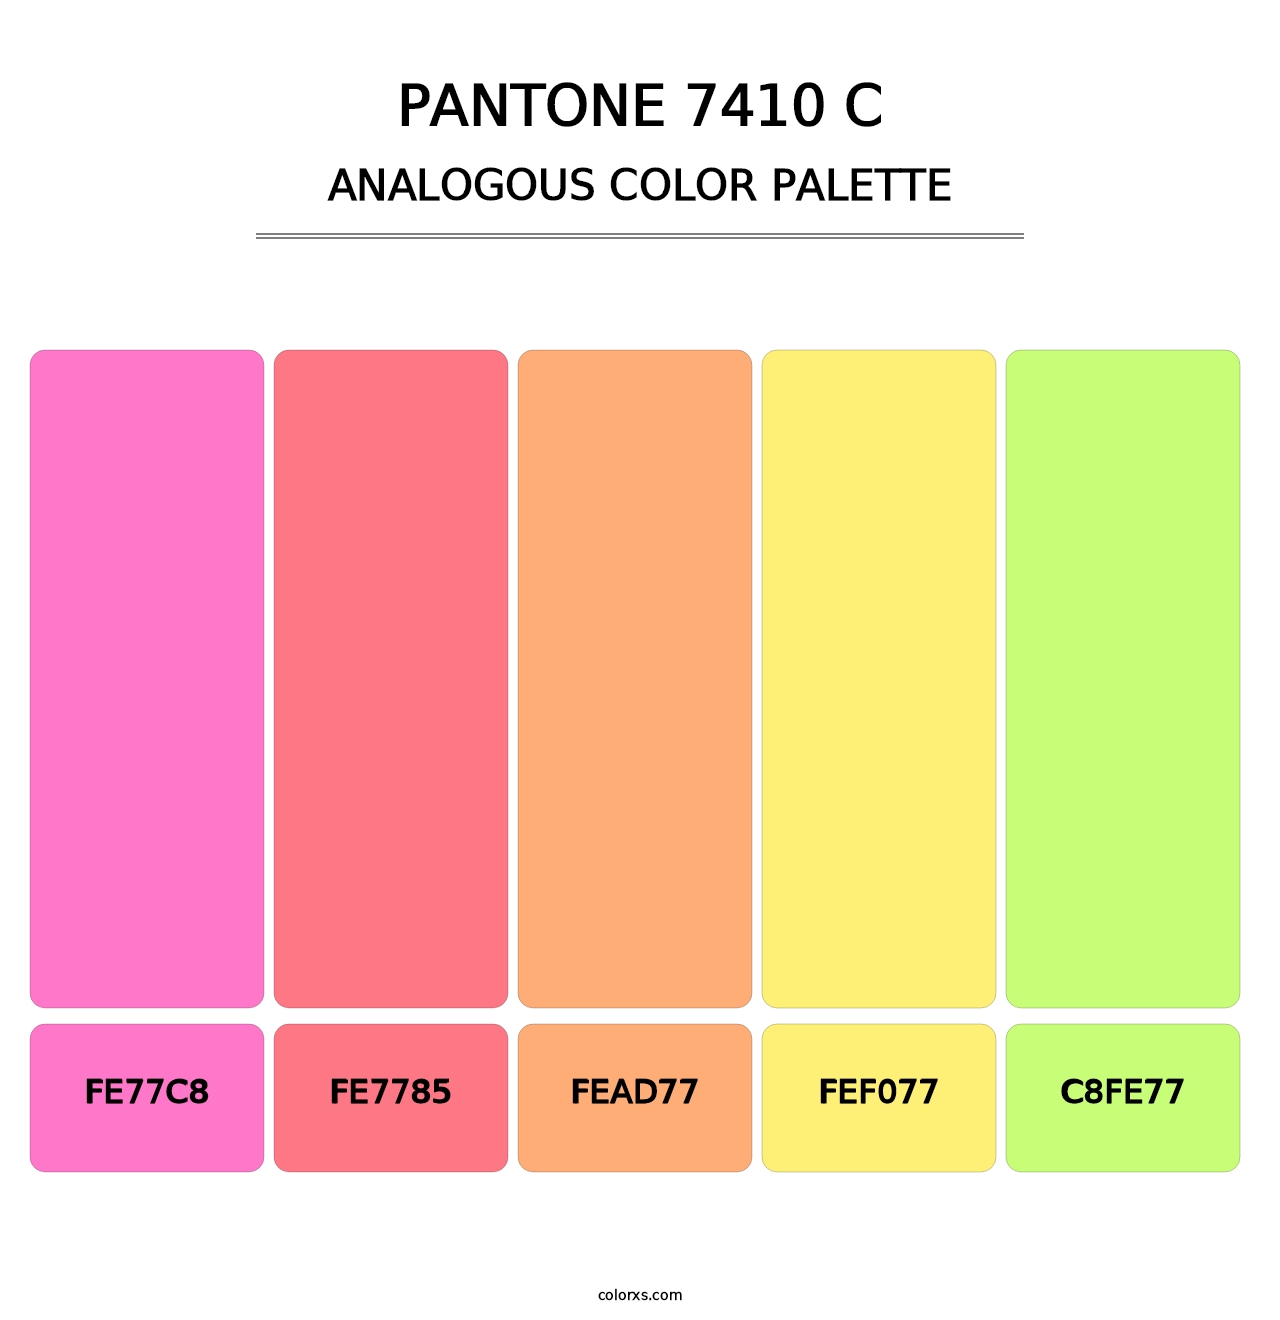 PANTONE 7410 C - Analogous Color Palette